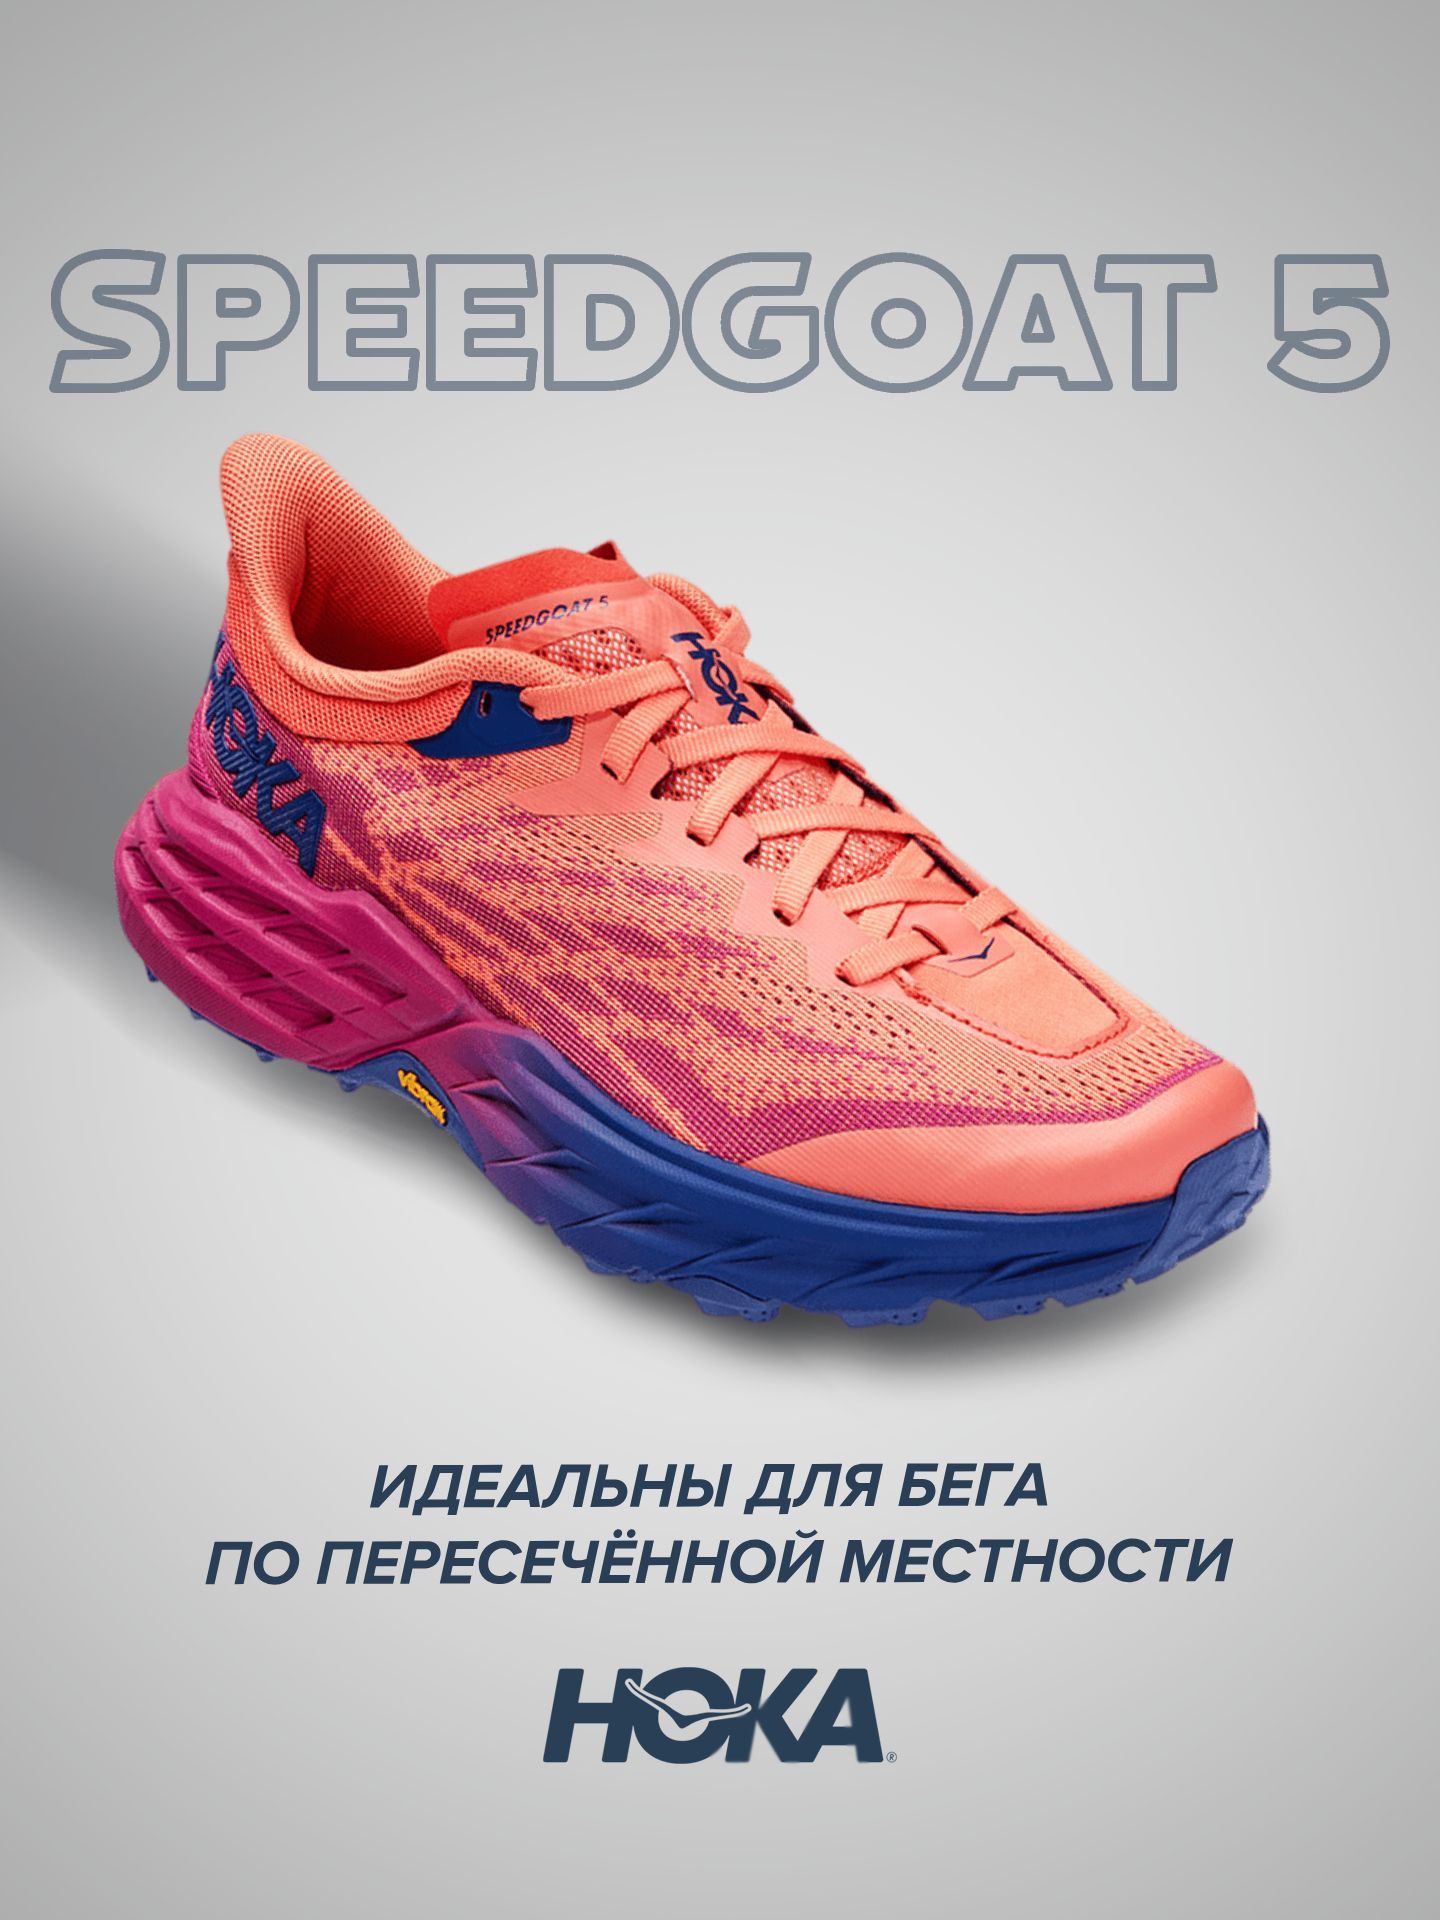 Спортивные кроссовки женские Hoka Speedgoat 5 красные 5.5 US